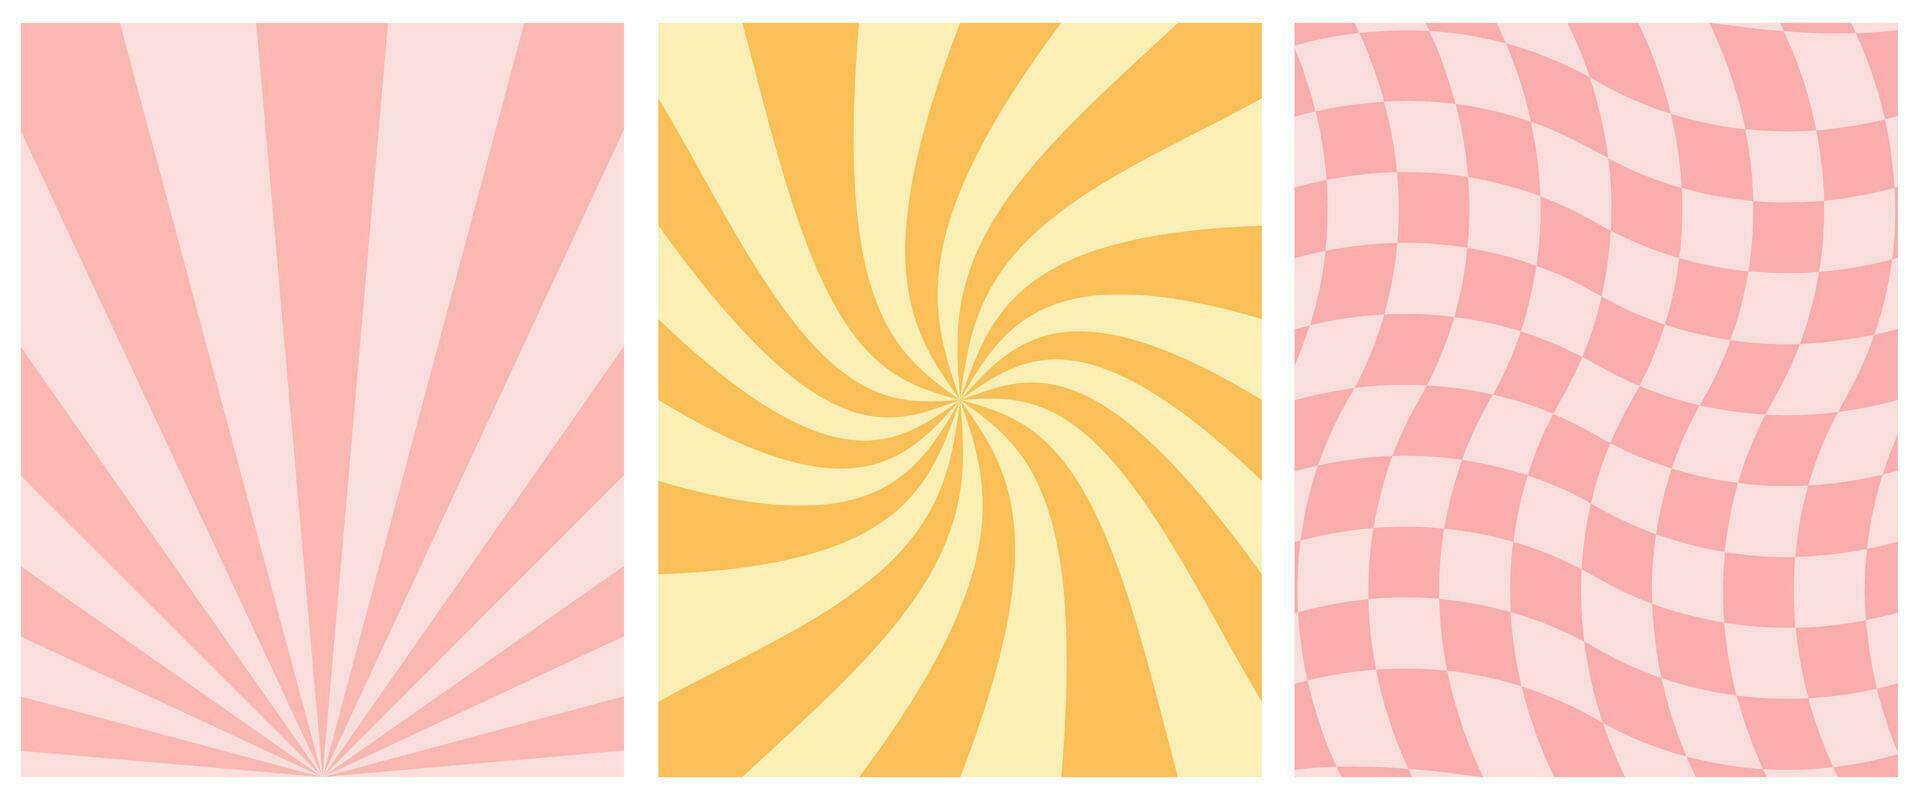 häftig retro abstrakt konst, 70-80-tal estetisk, bakgrund för social media, berättelser, tapet. pastell sommar, solnedgång vågor, linje, gul och rosa. vektor enkel illustration.